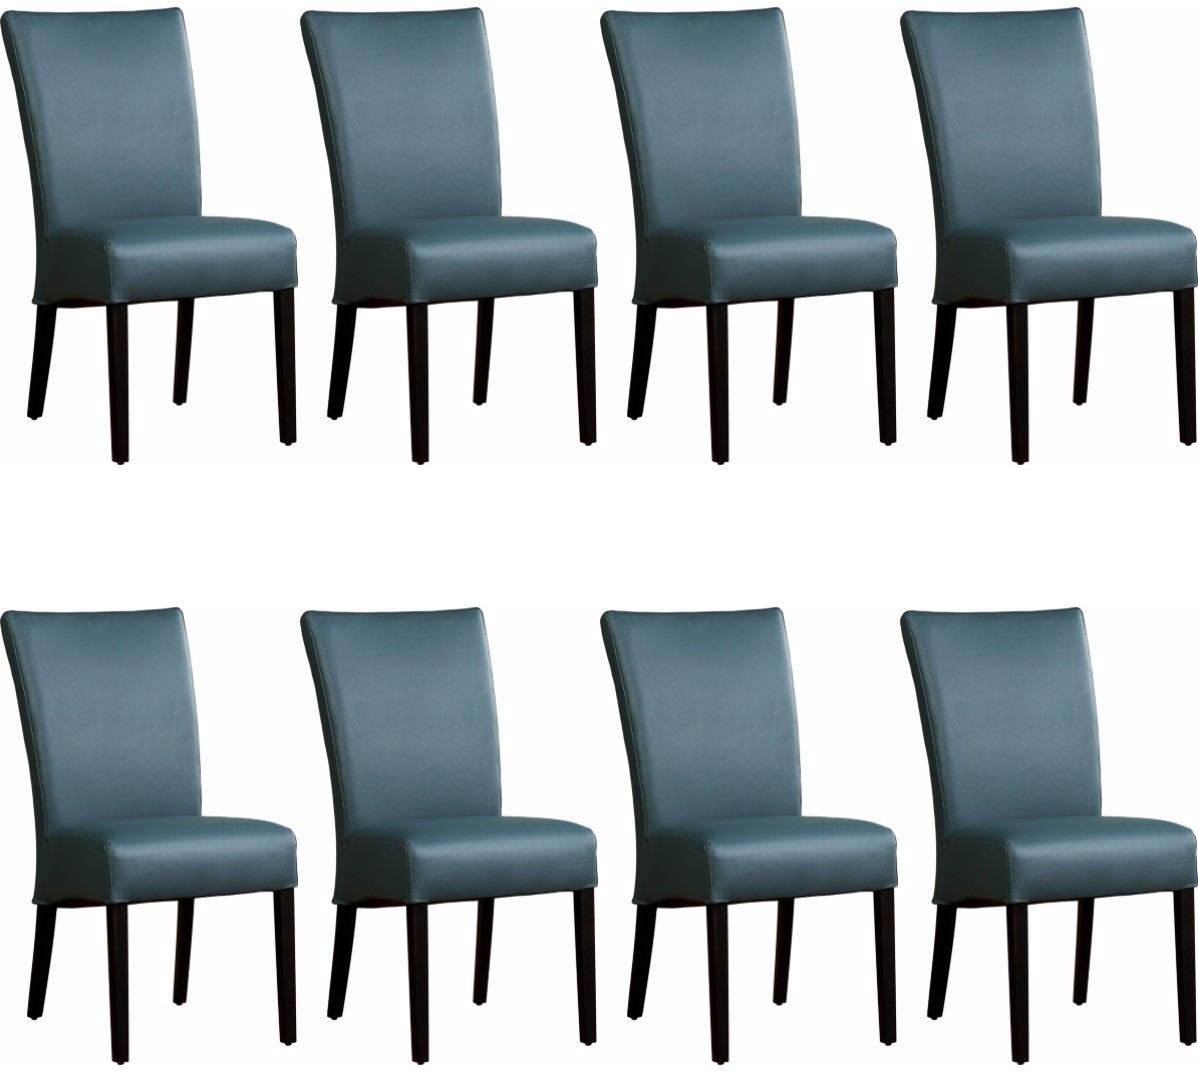 Coöperatie hypotheek Monet Leren eetkamerstoel Just - set van 8 stoelen ShopX